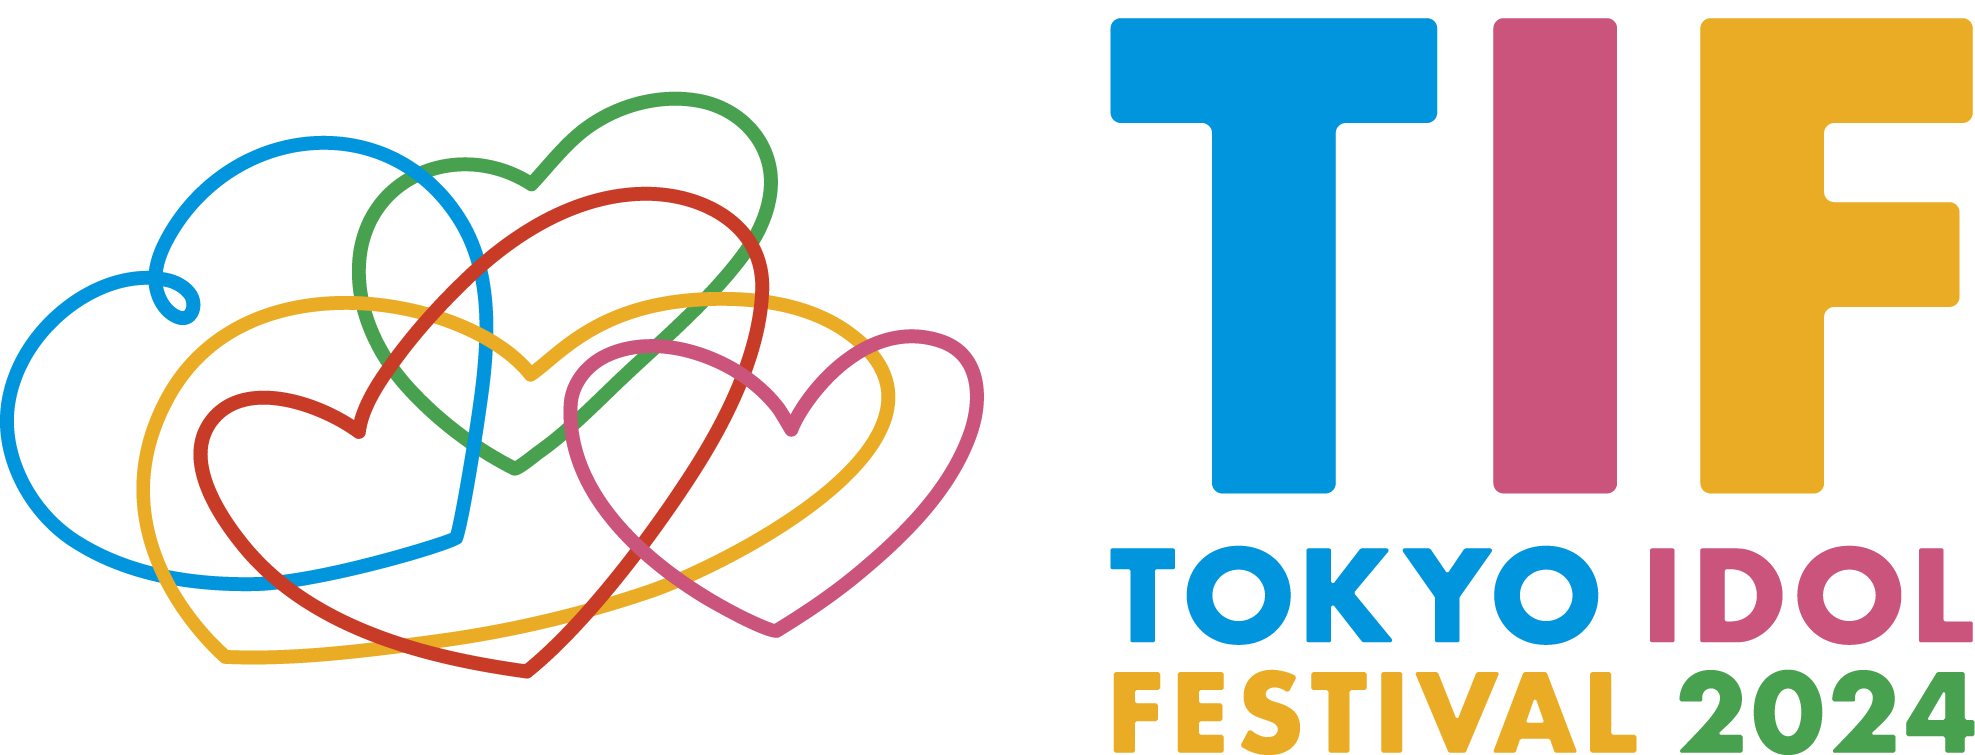 『TOKYO IDOL FESTIVAL 2024』